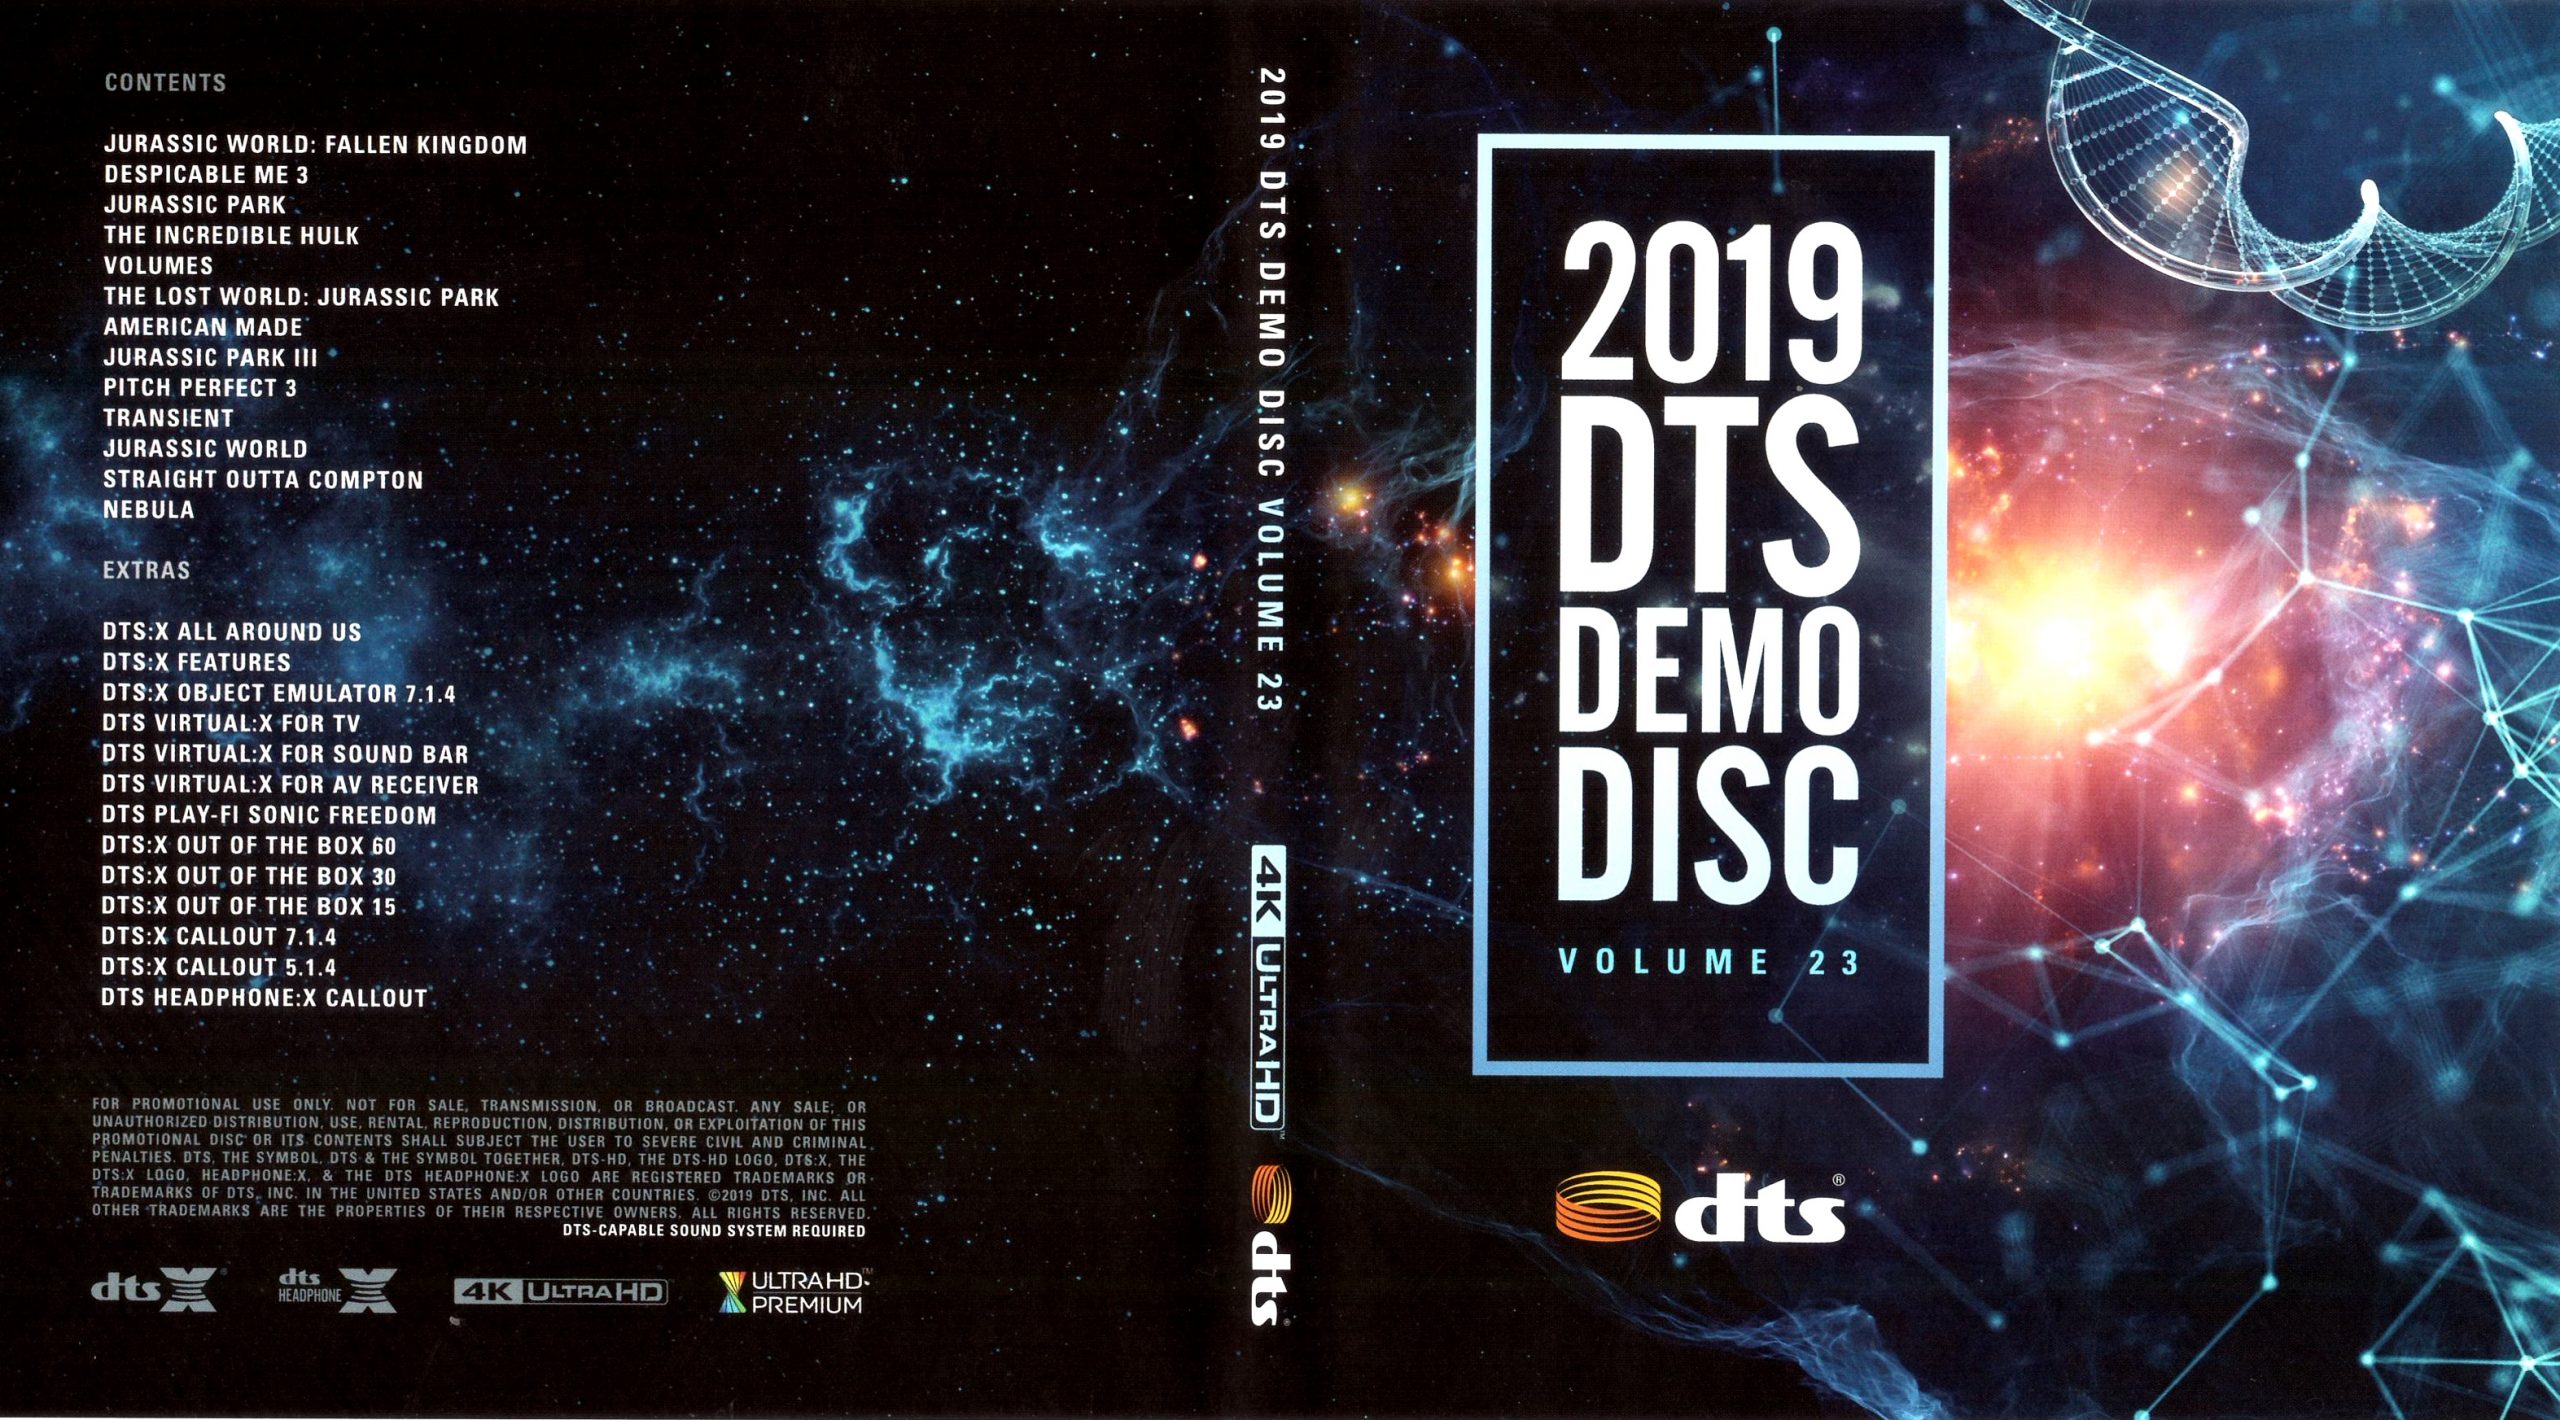 DTS蓝光演示碟 2019 4K UHD DTS Demo Disc Vol.23 H.265 HDR 4KUltraHD DTS-X 7.1